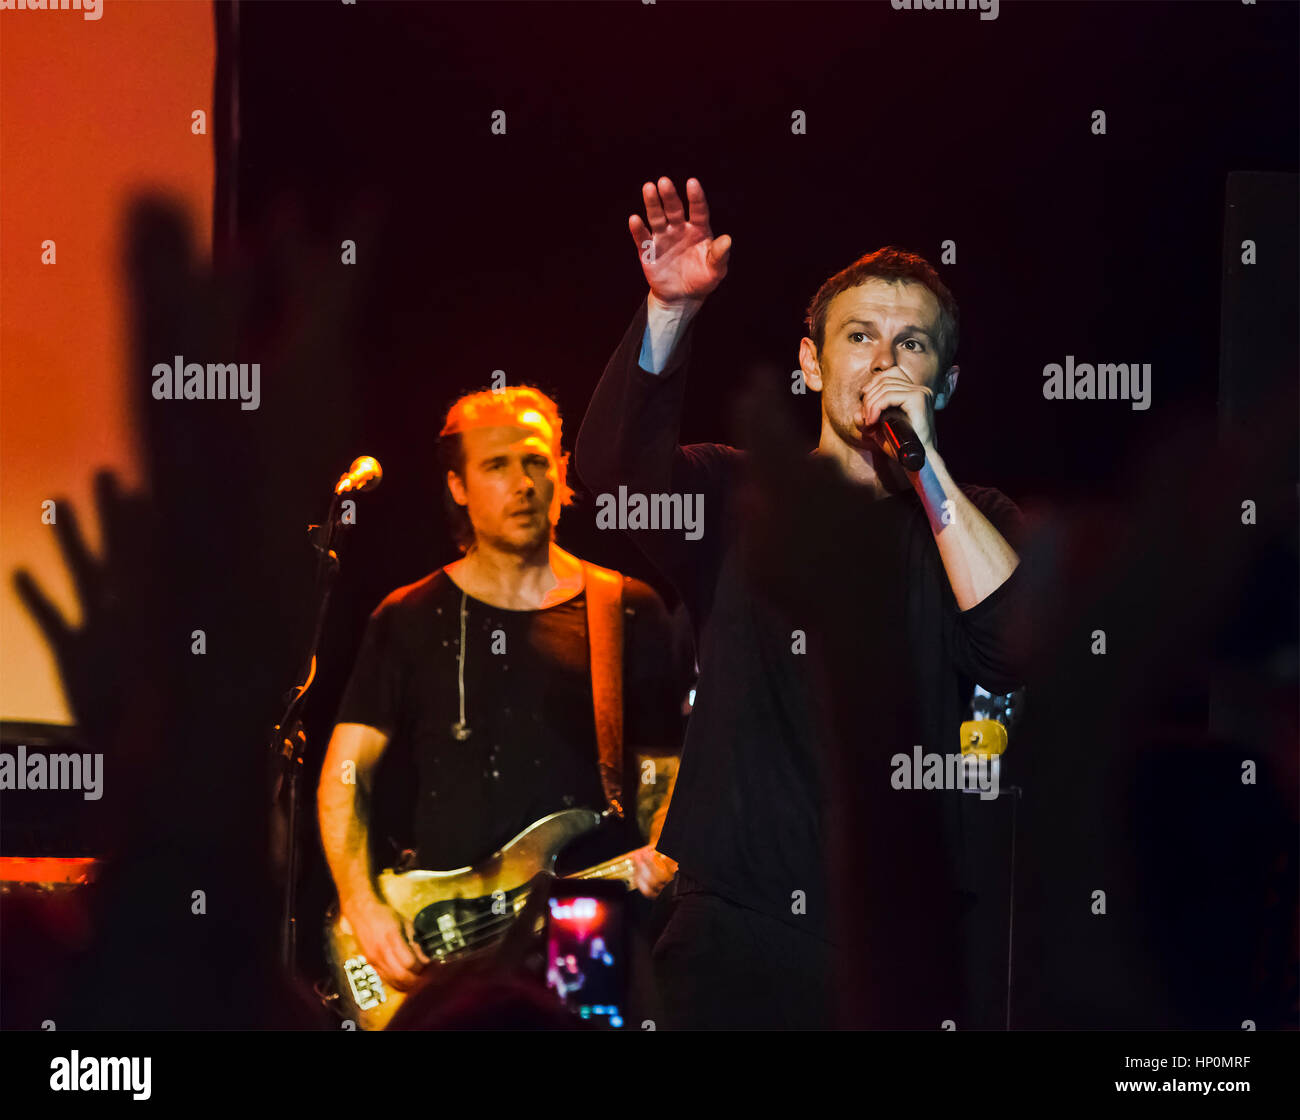 SYDNEY, Australien - 5. Februar 2017: Svyatoslav Vakarchuk, Frontmann der ukrainischen Rock band Okean Elzy auf der Bühne des Teatro Metro Stockfoto